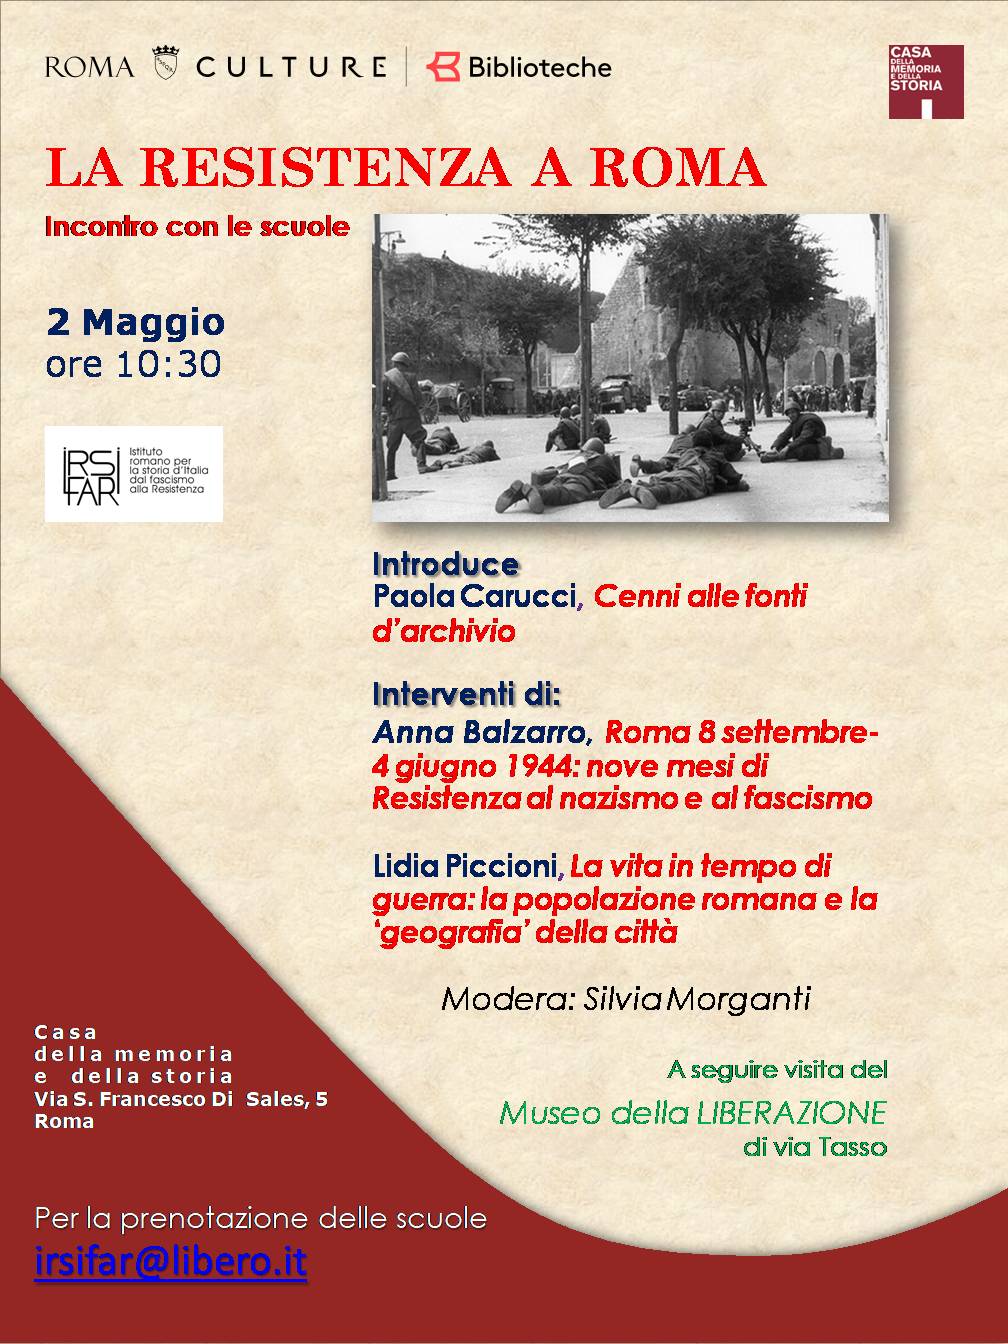 La Resistenza a Roma – giornata dedicata alle scuole il 2 maggio